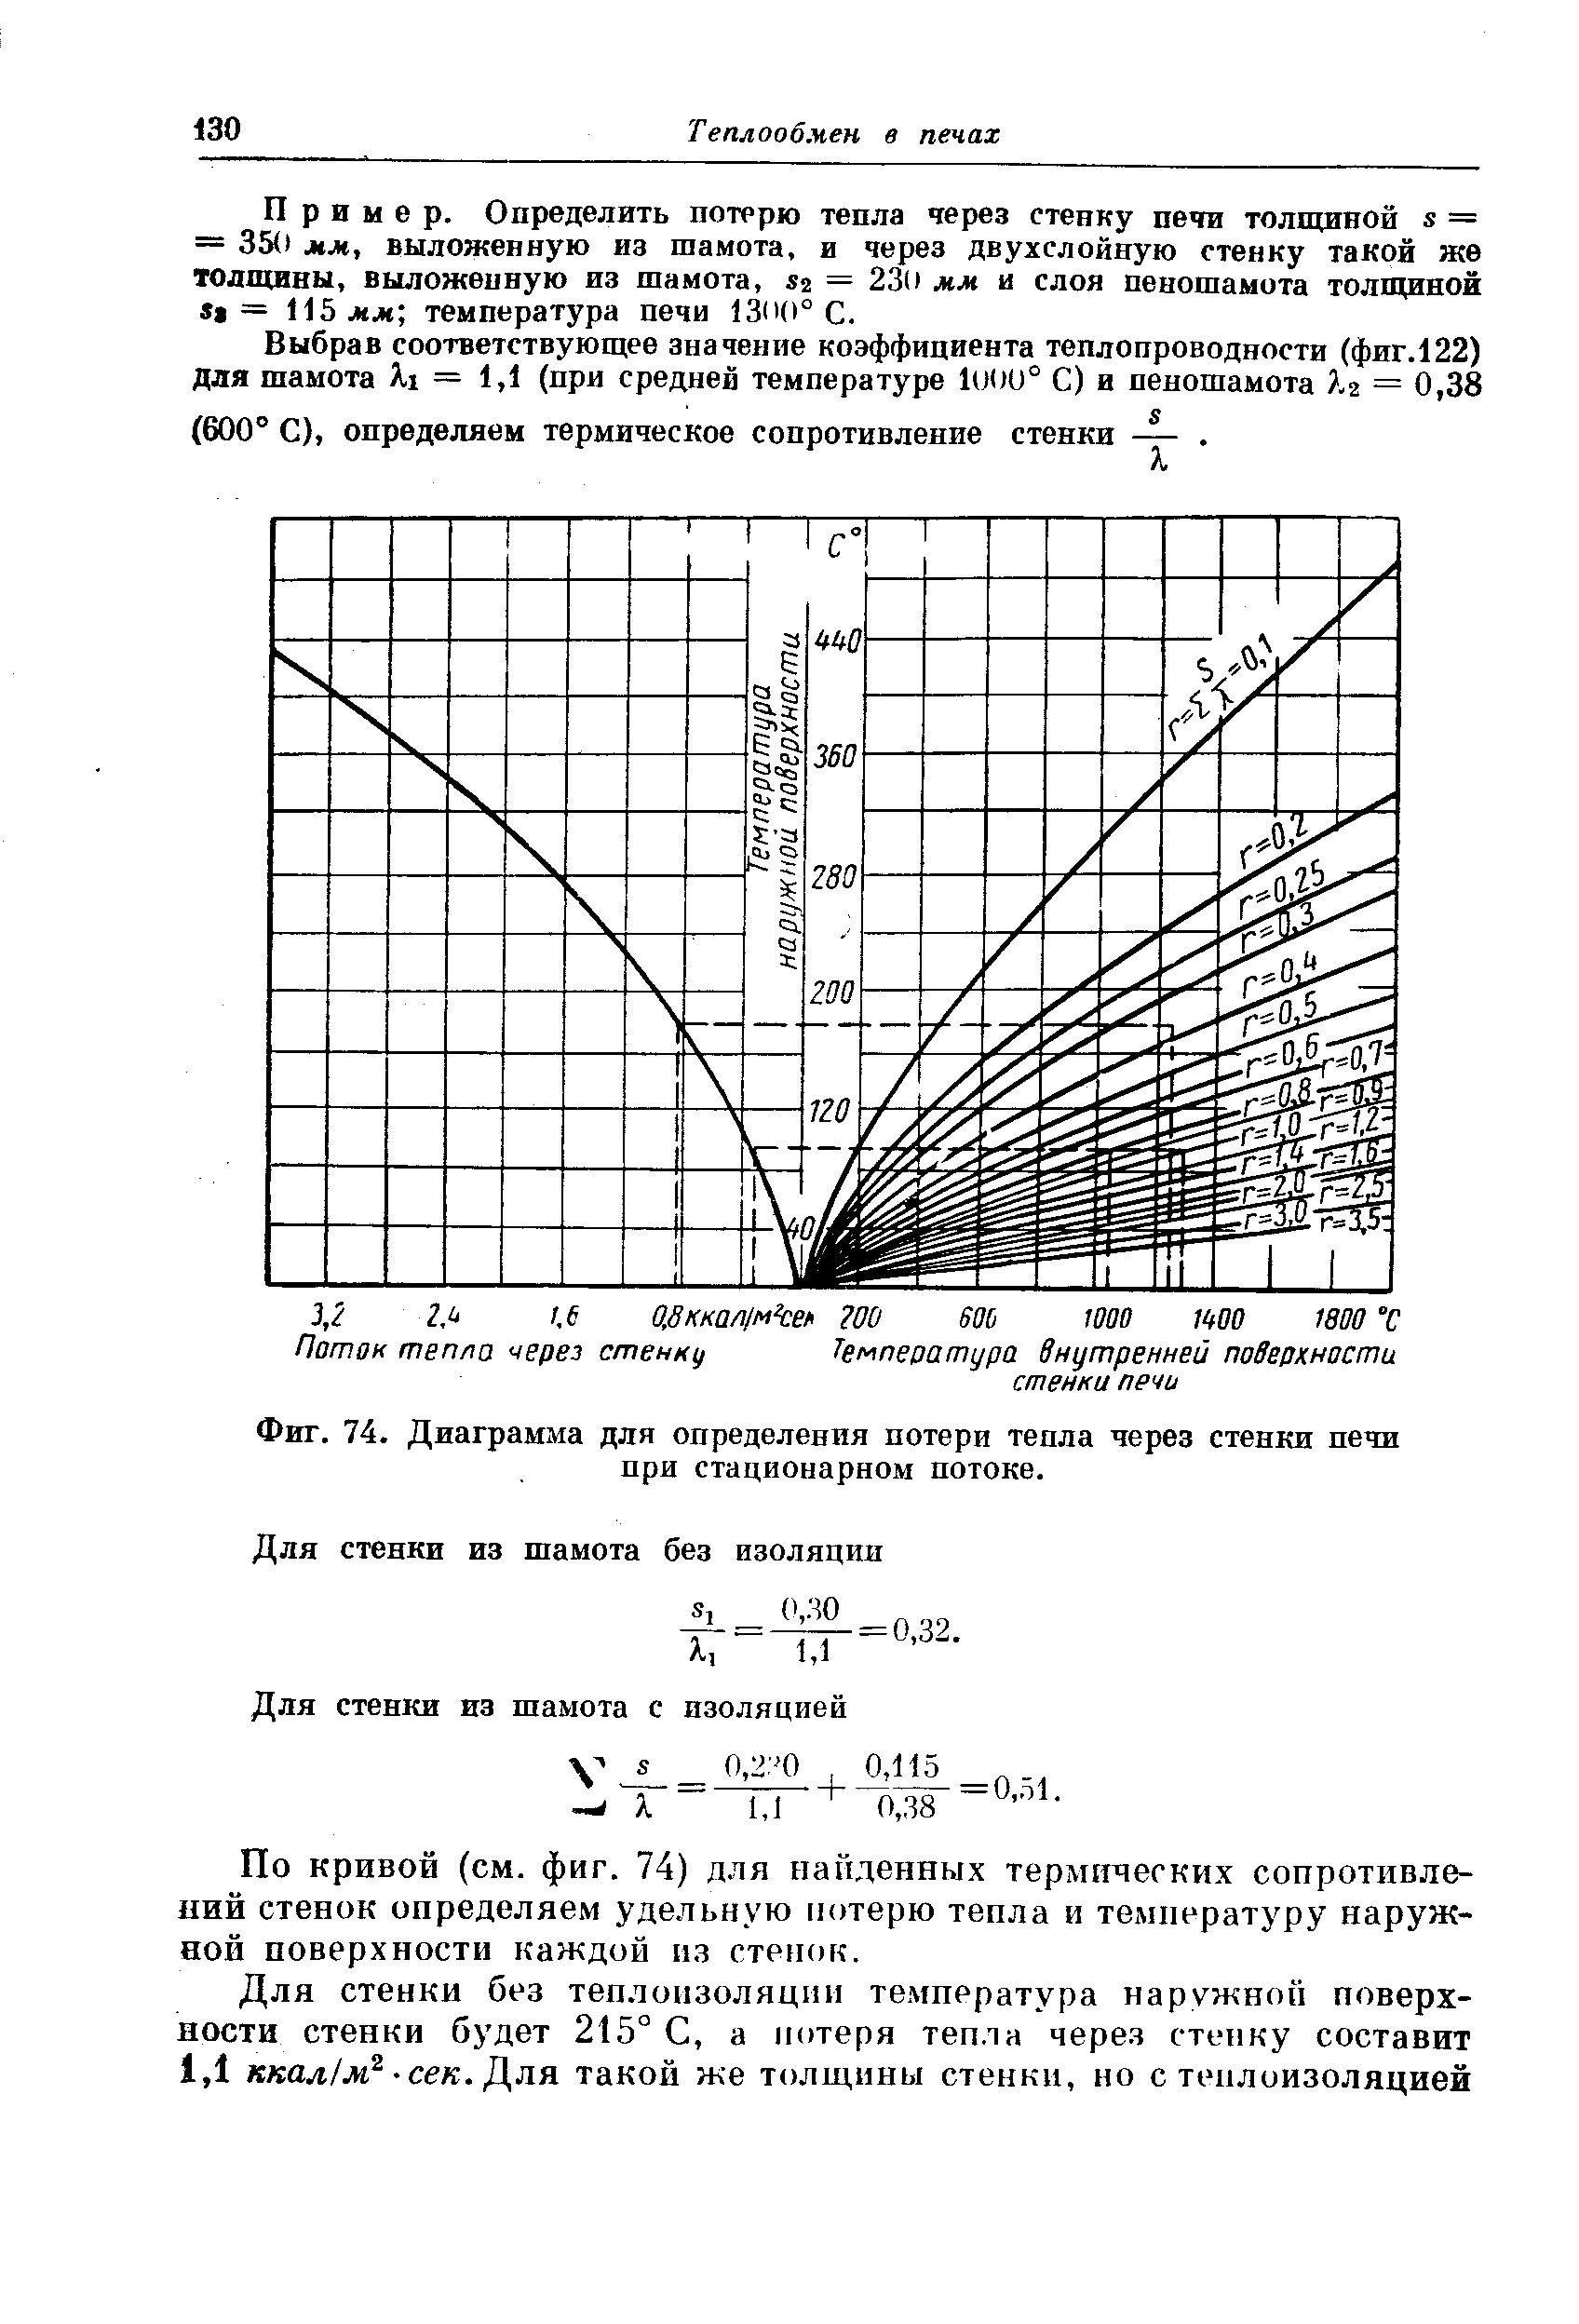 Фиг. 74. Диаграмма для определения потери тепла через стенки печи при стационарном потоке.
